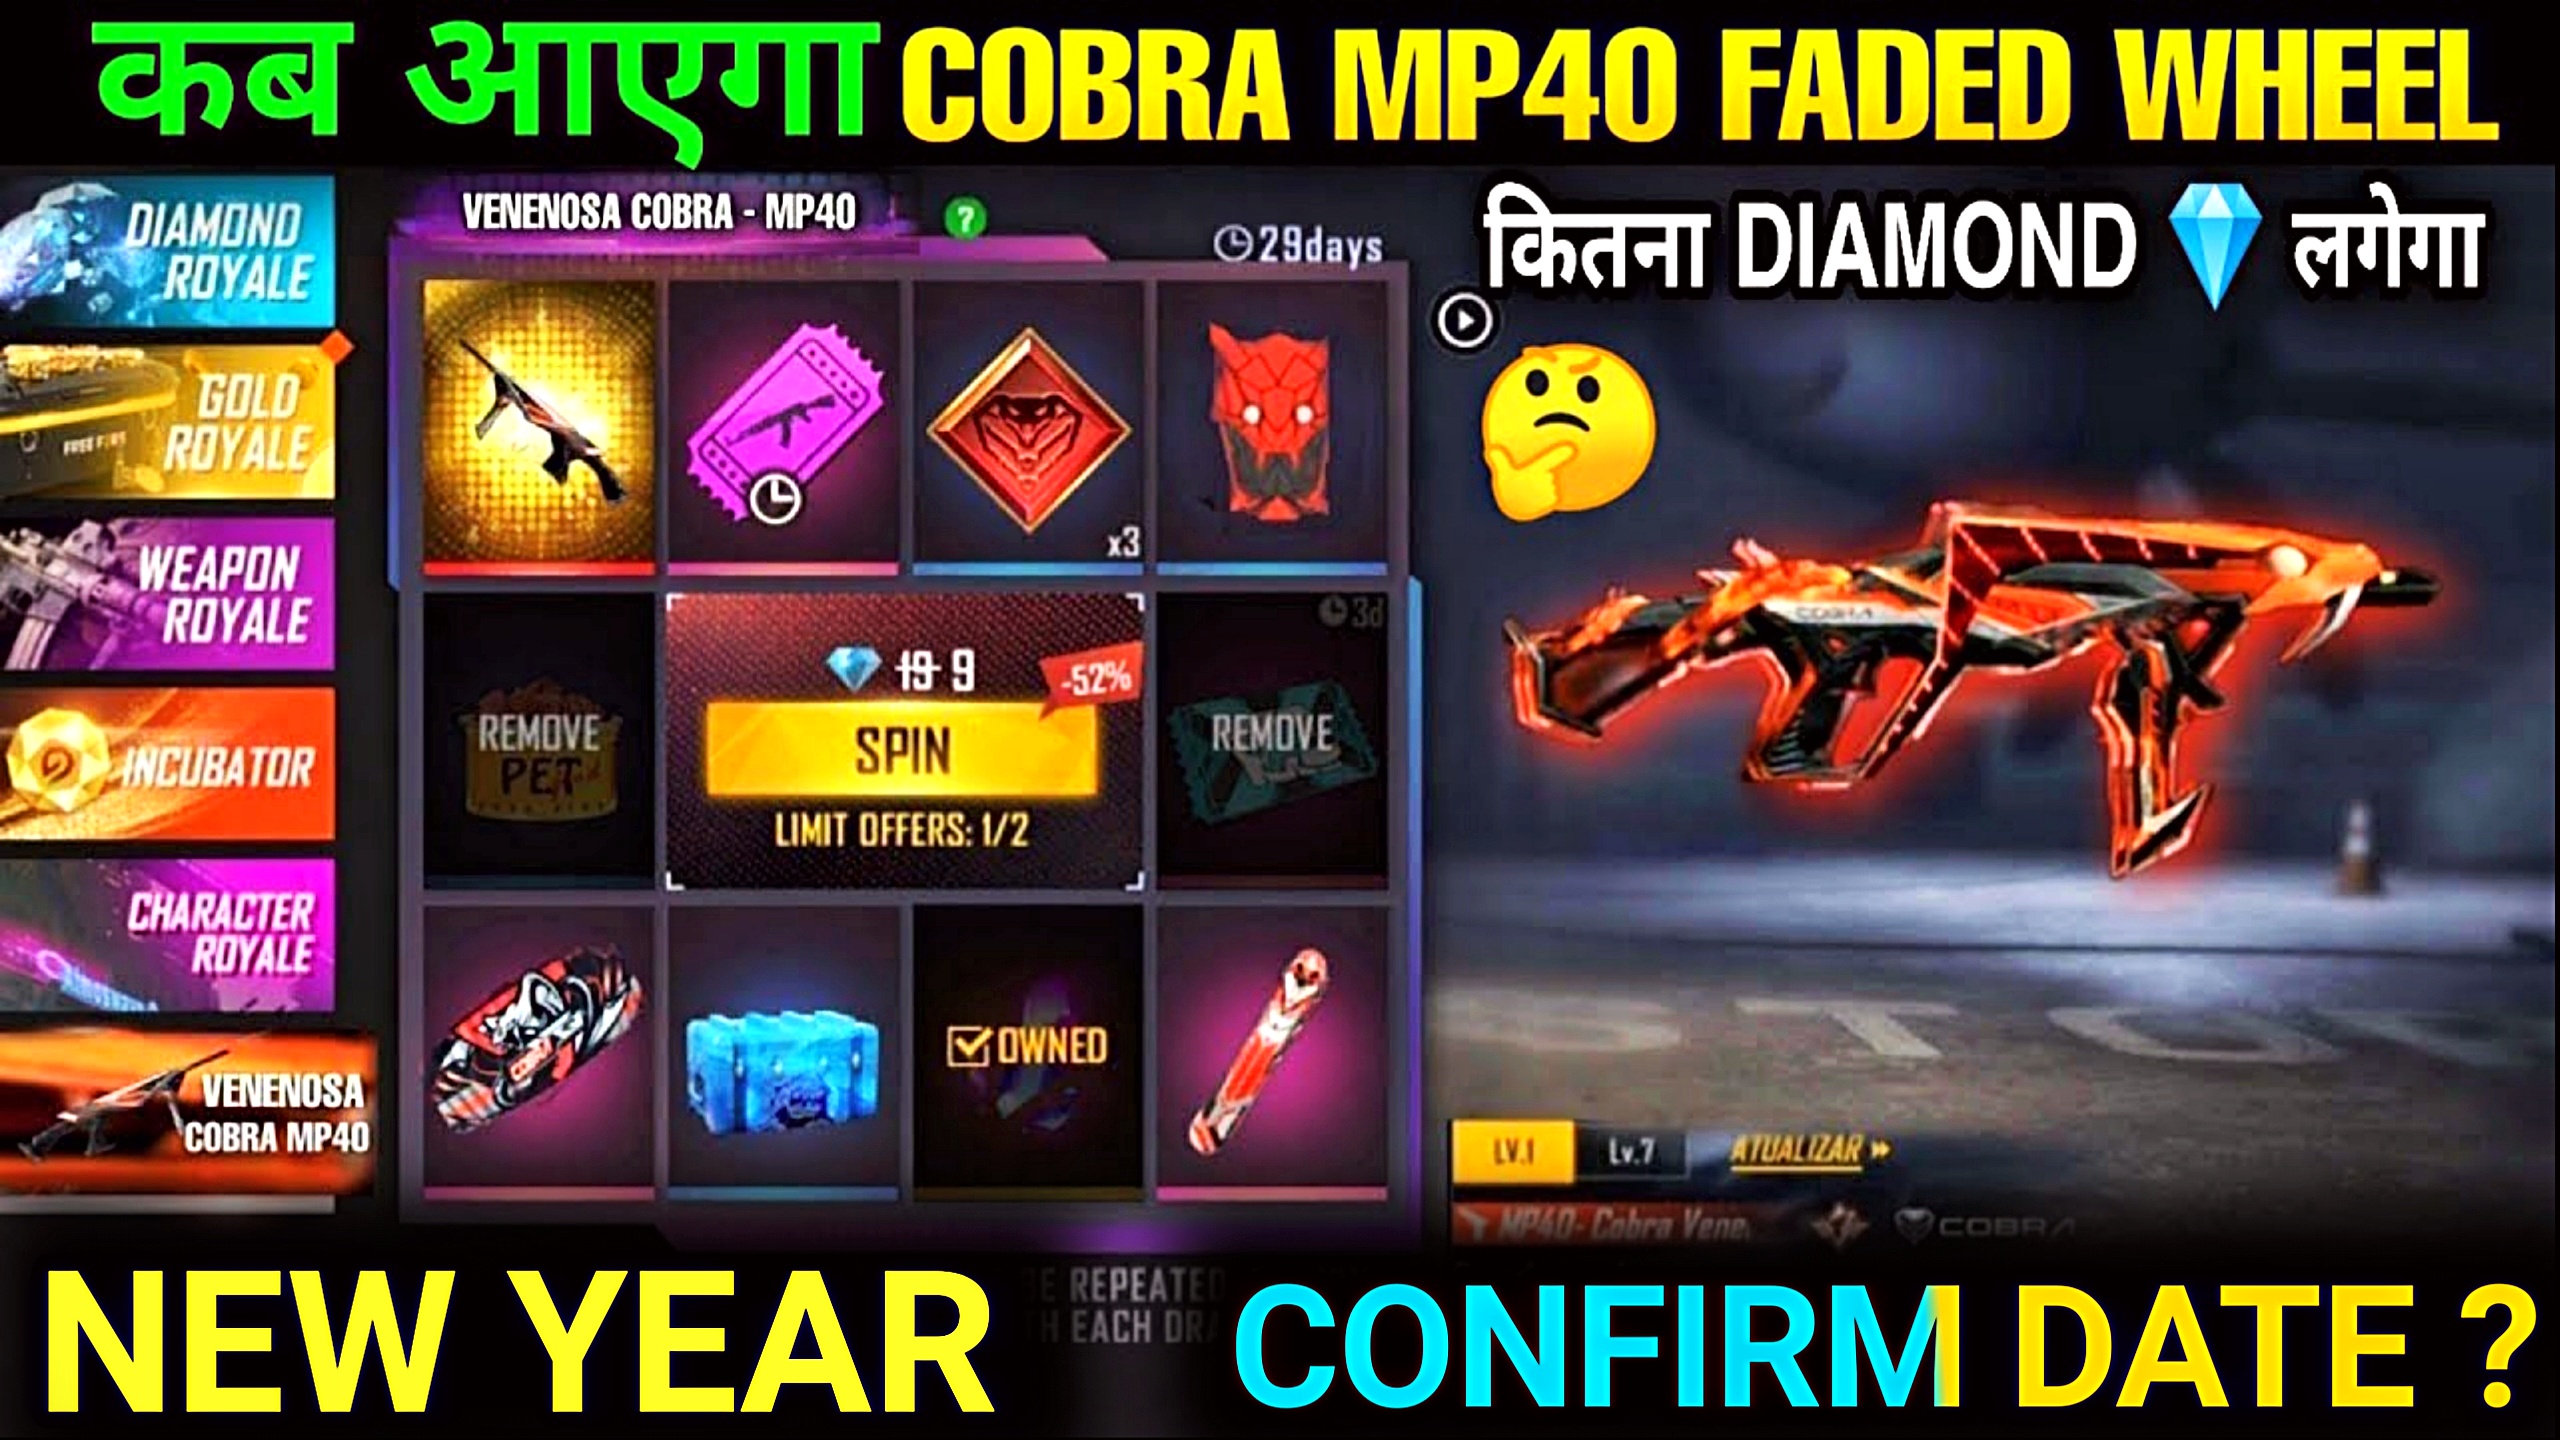 COBRA MP40 RETURN DATE 2021